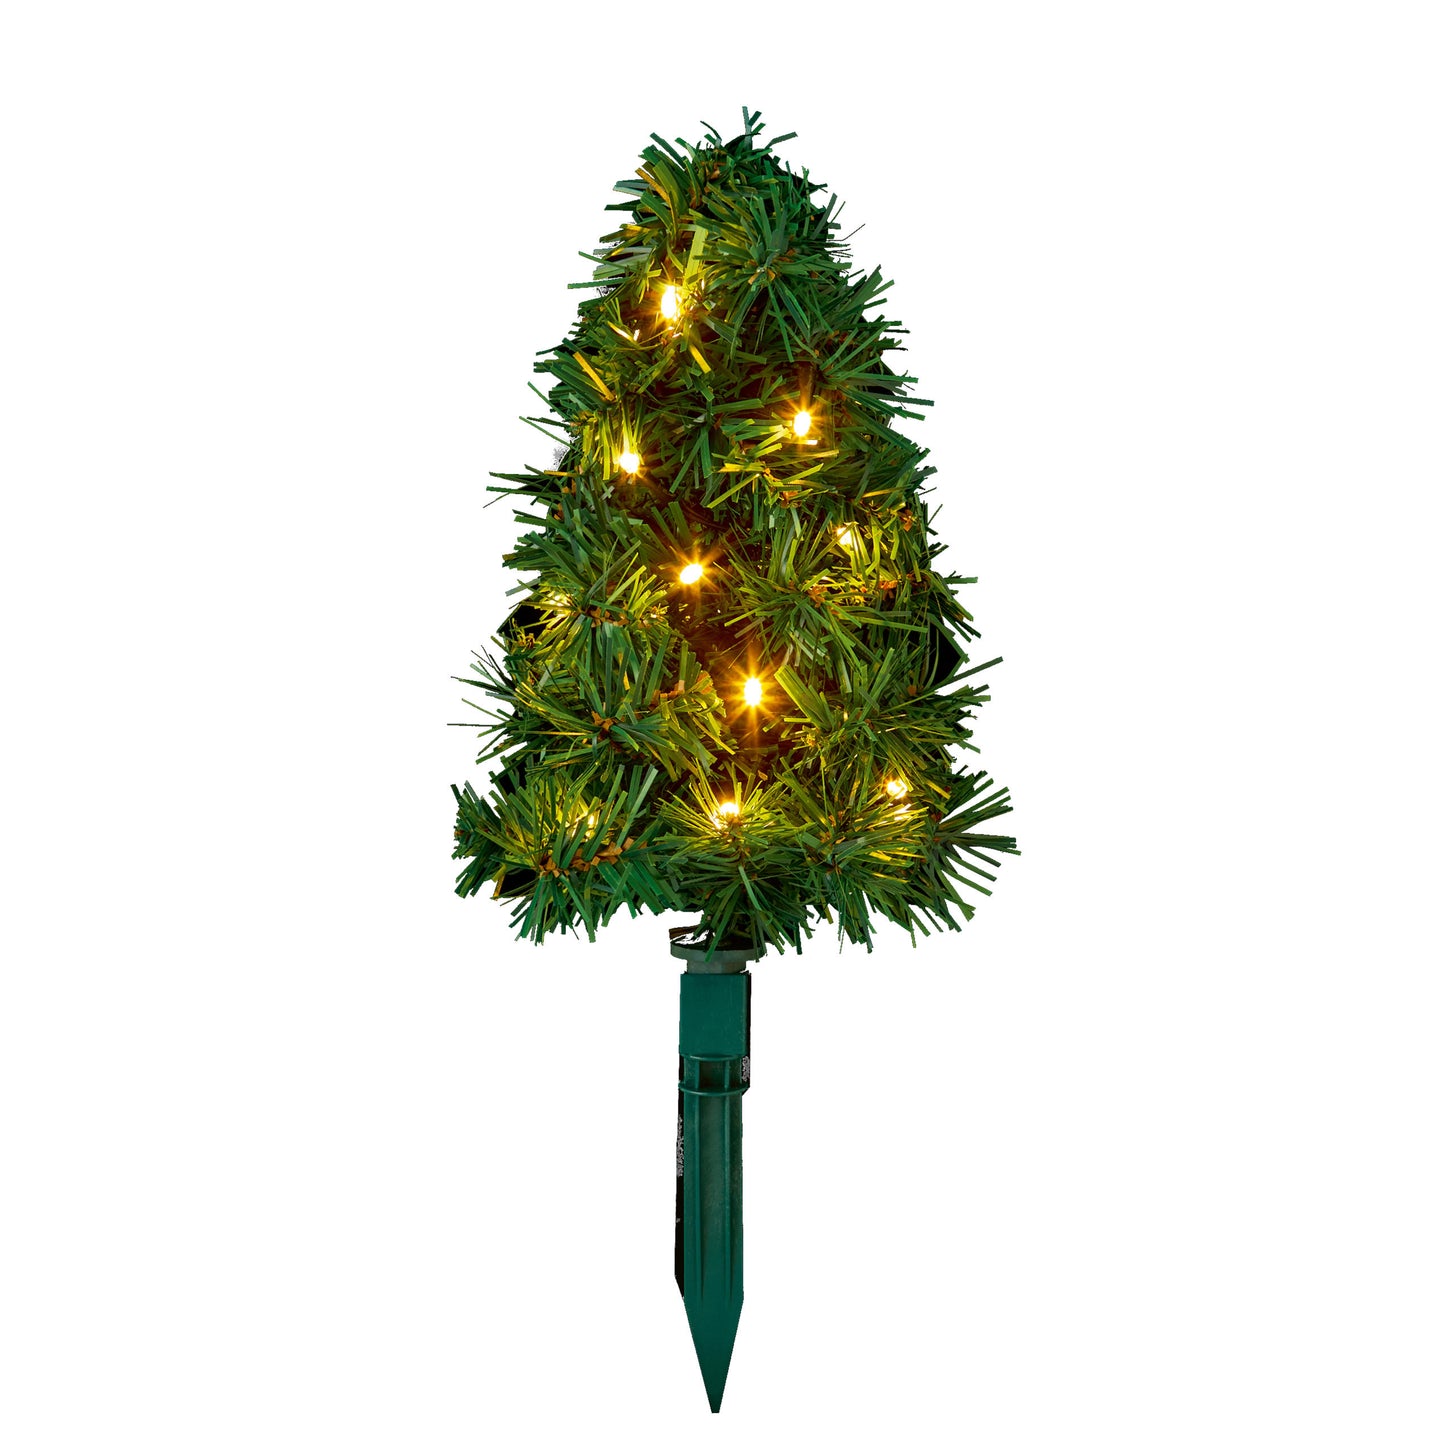 Chodníkové dekoračné svietidlá 6ks ⸱ Christmas Tree Path Lights